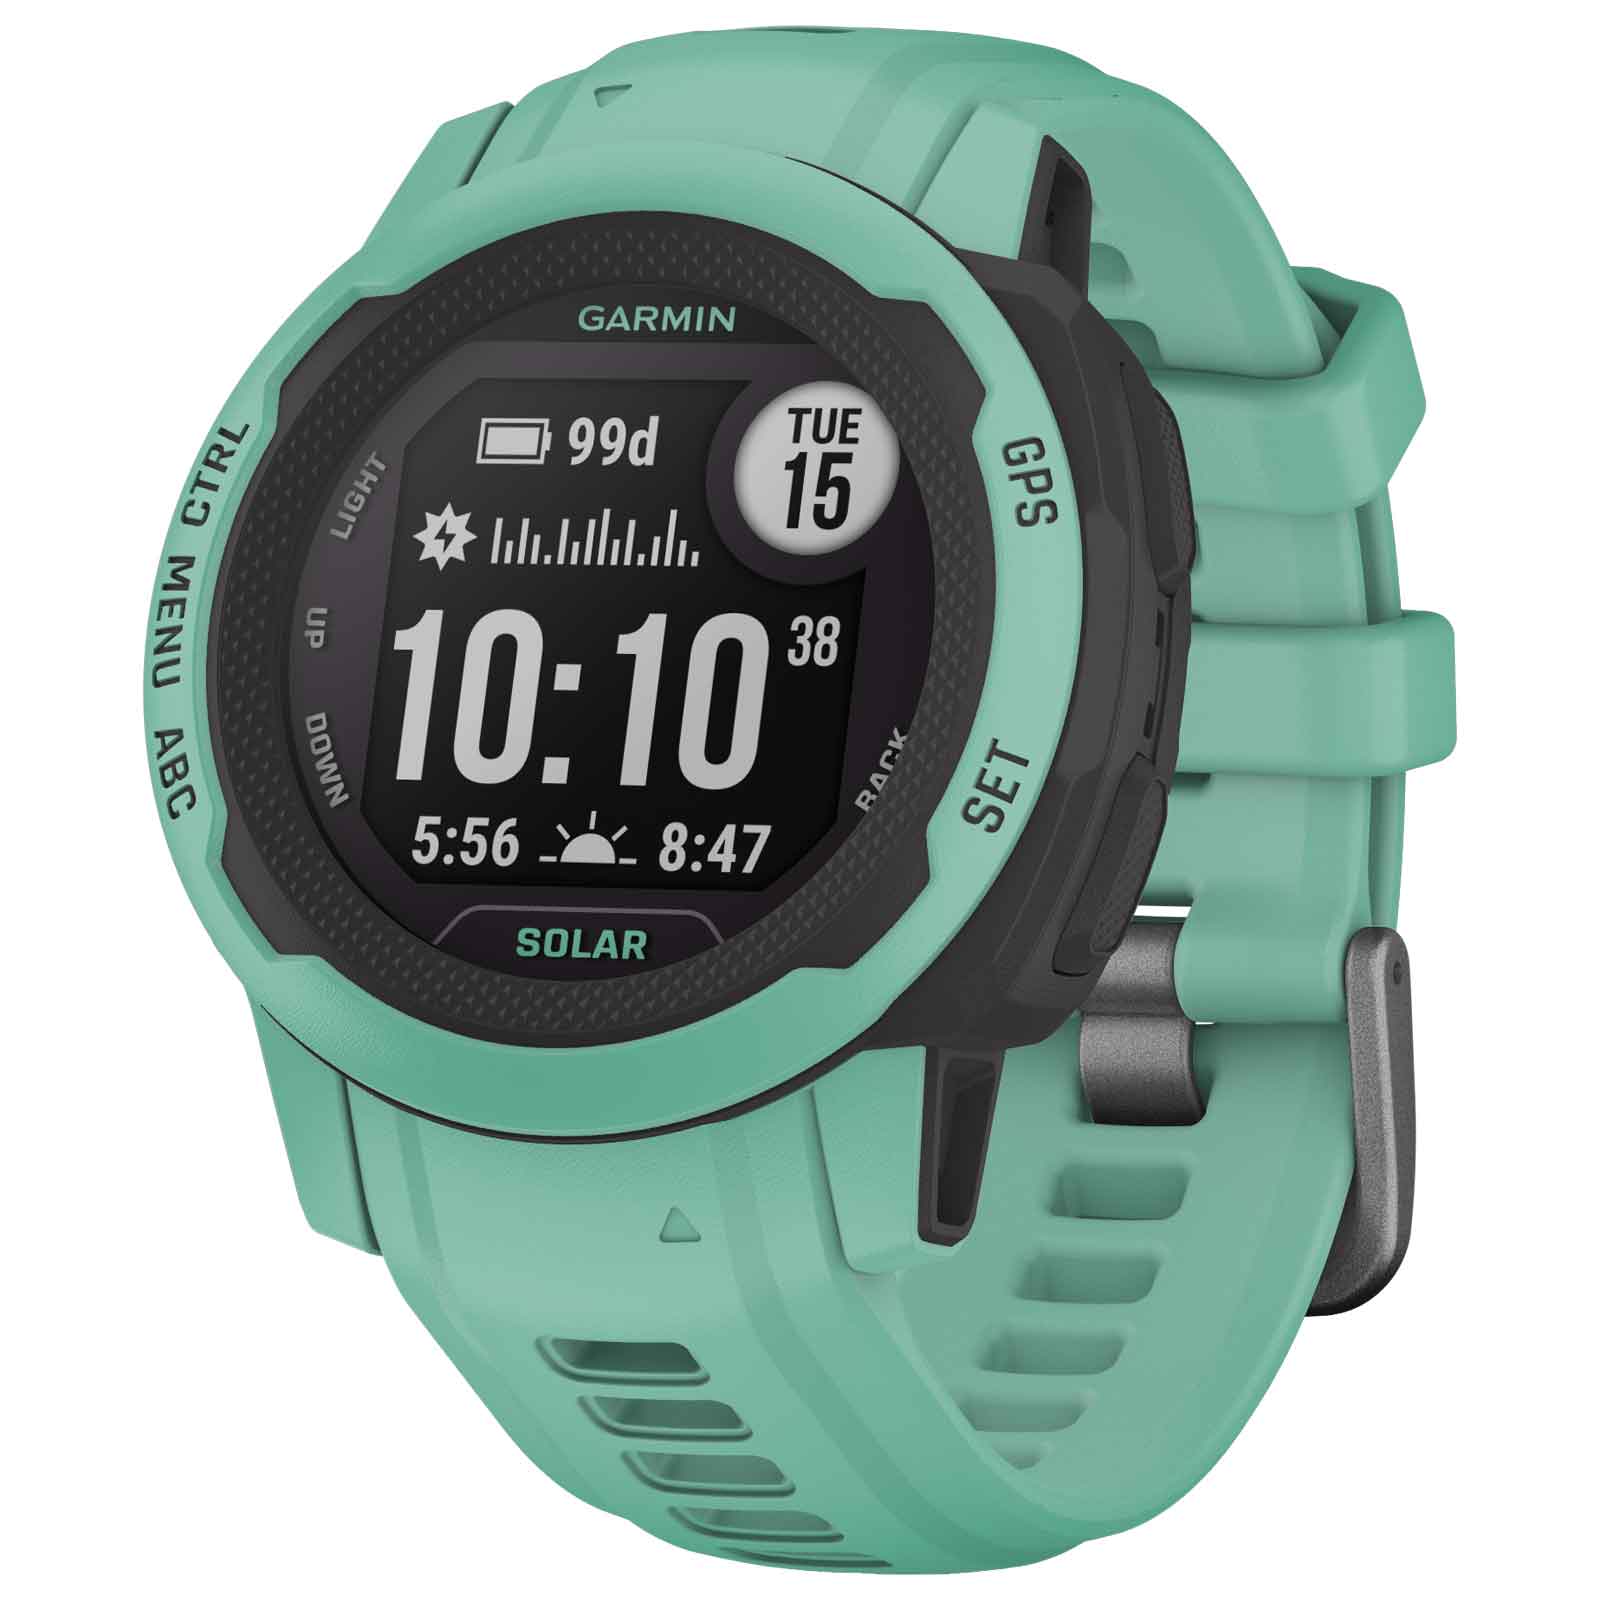 Produktbild von Garmin Instinct 2S Solar GPS Smartwatch Standard Edition - pastellgrün